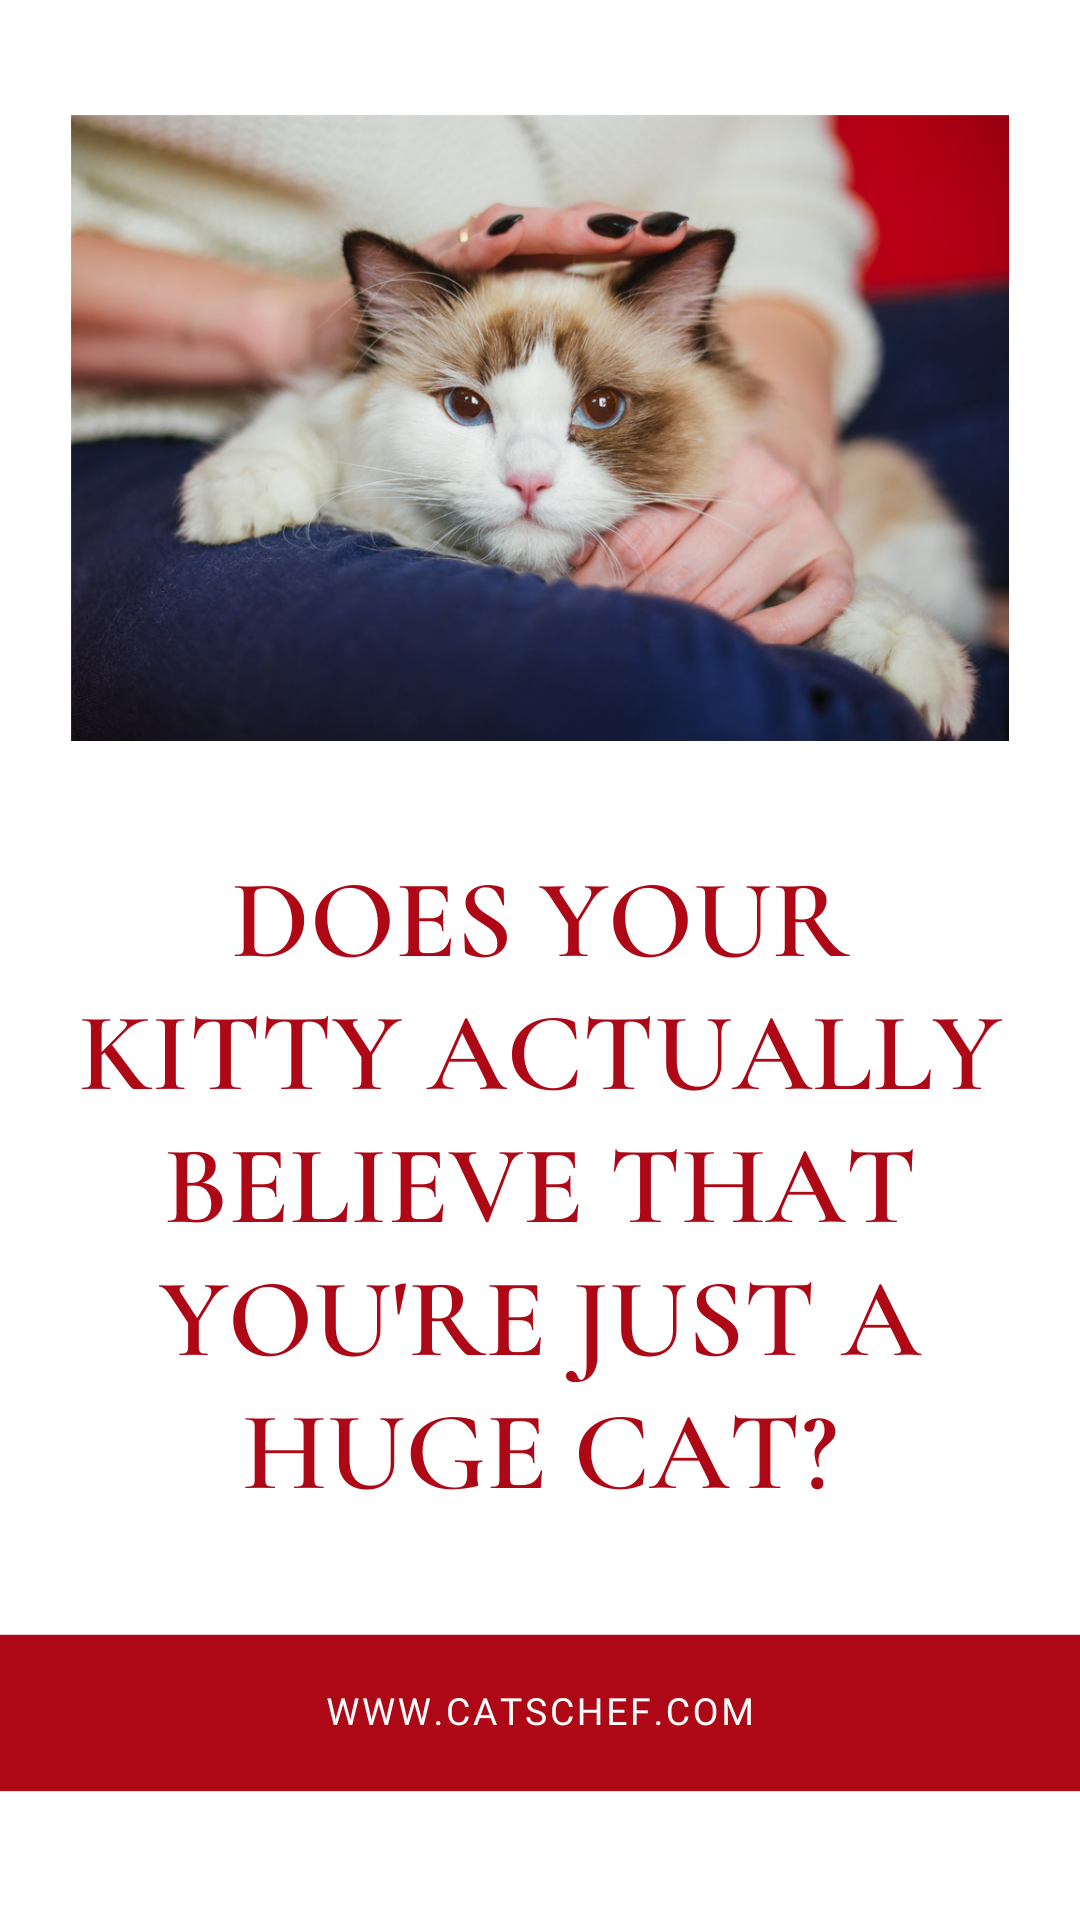 Kediniz Aslında Sizin Kocaman Bir Kedi Olduğunuza mı İnanıyor?